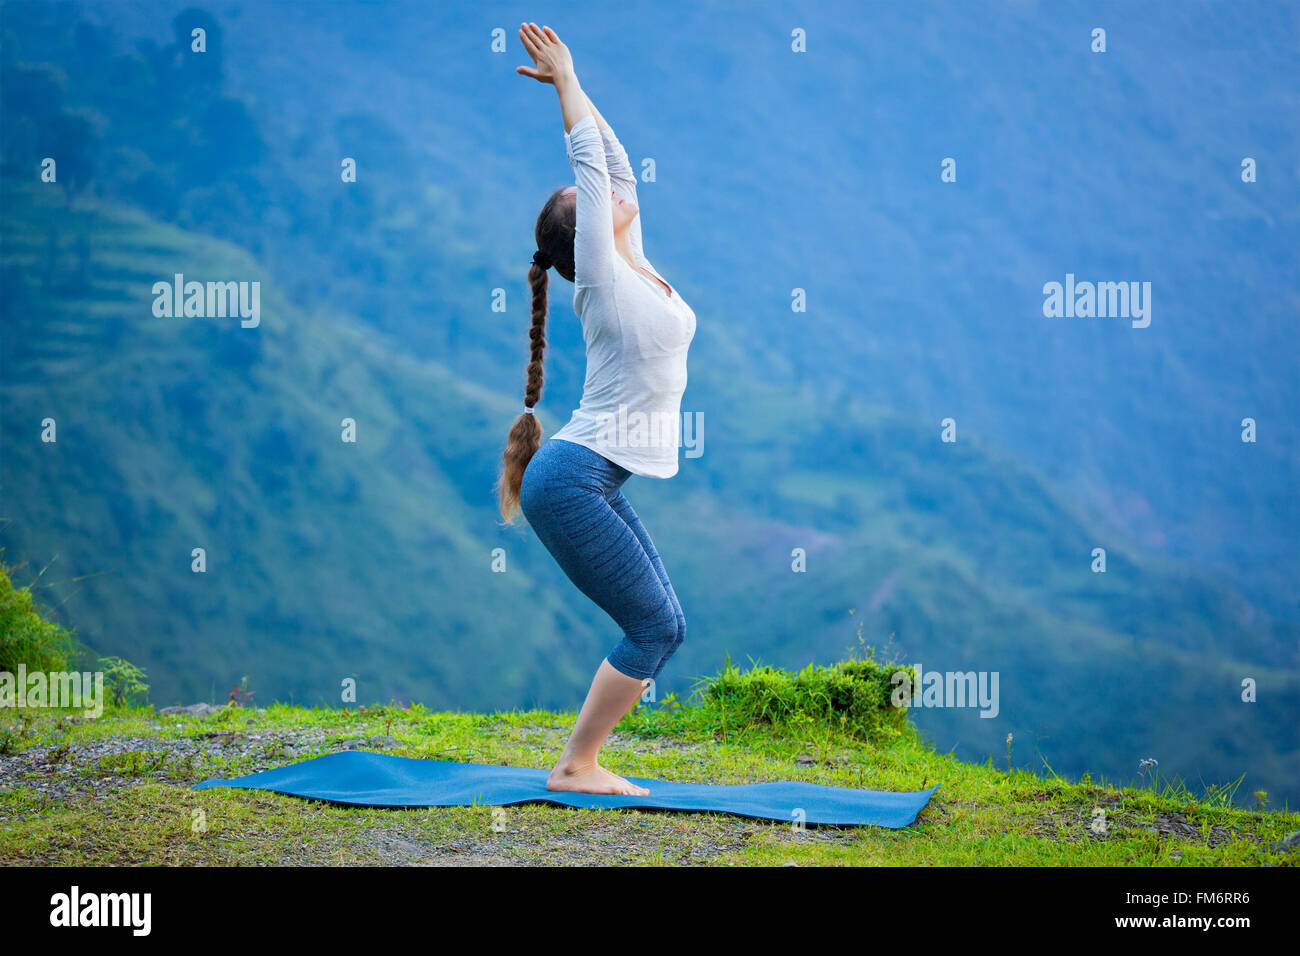 Woman doing yoga asana Utkatasana outdoors Stock Photo